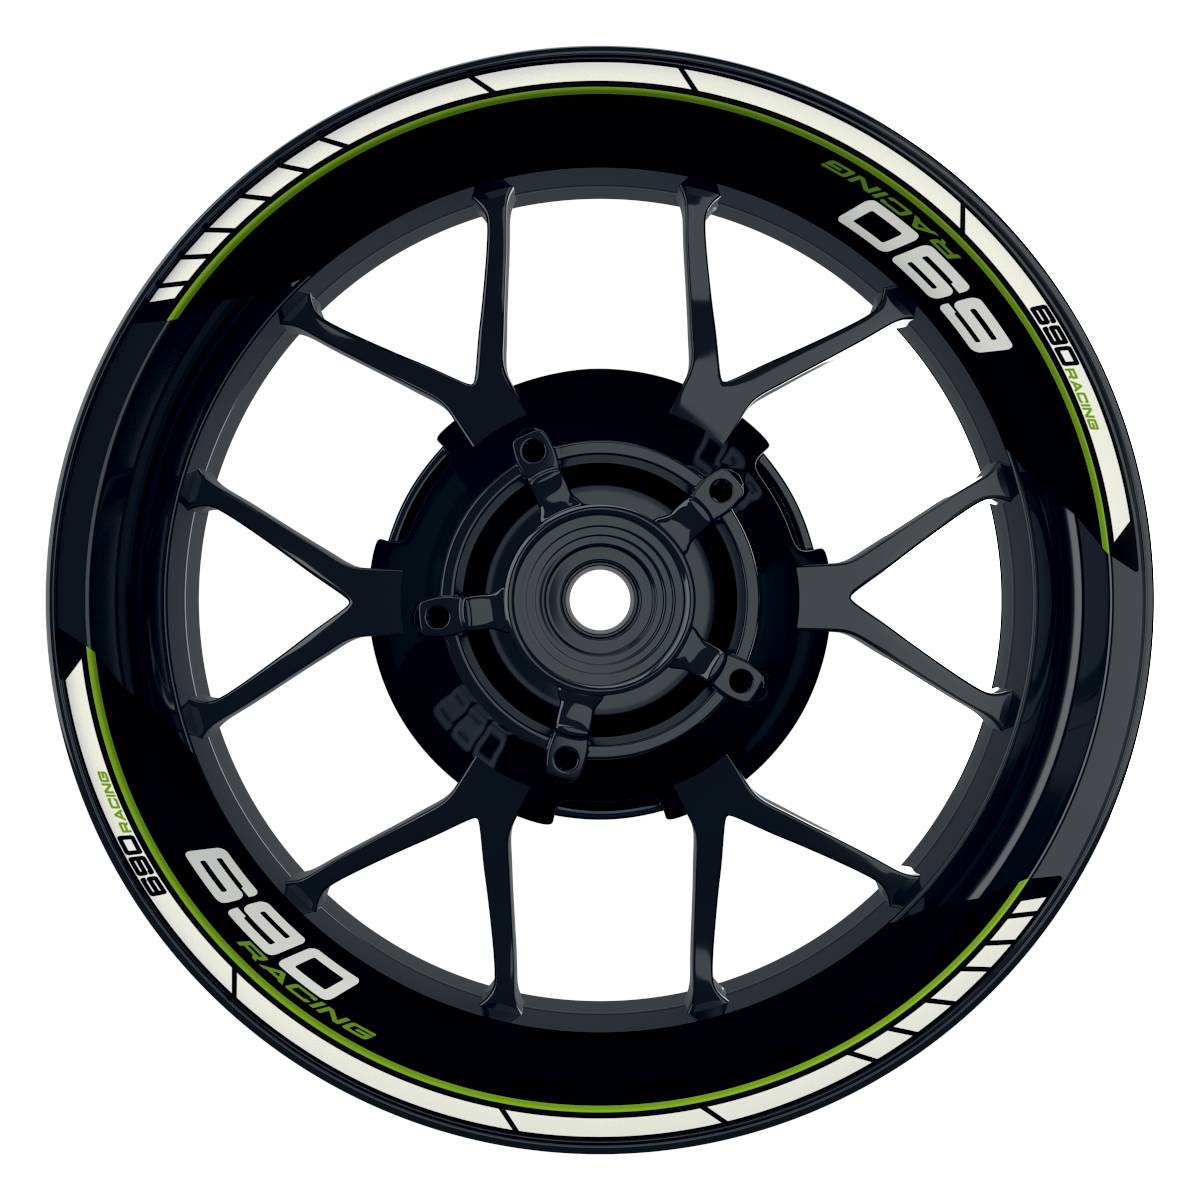 KTM Racing 690 Clean schwarz gruen Frontansicht